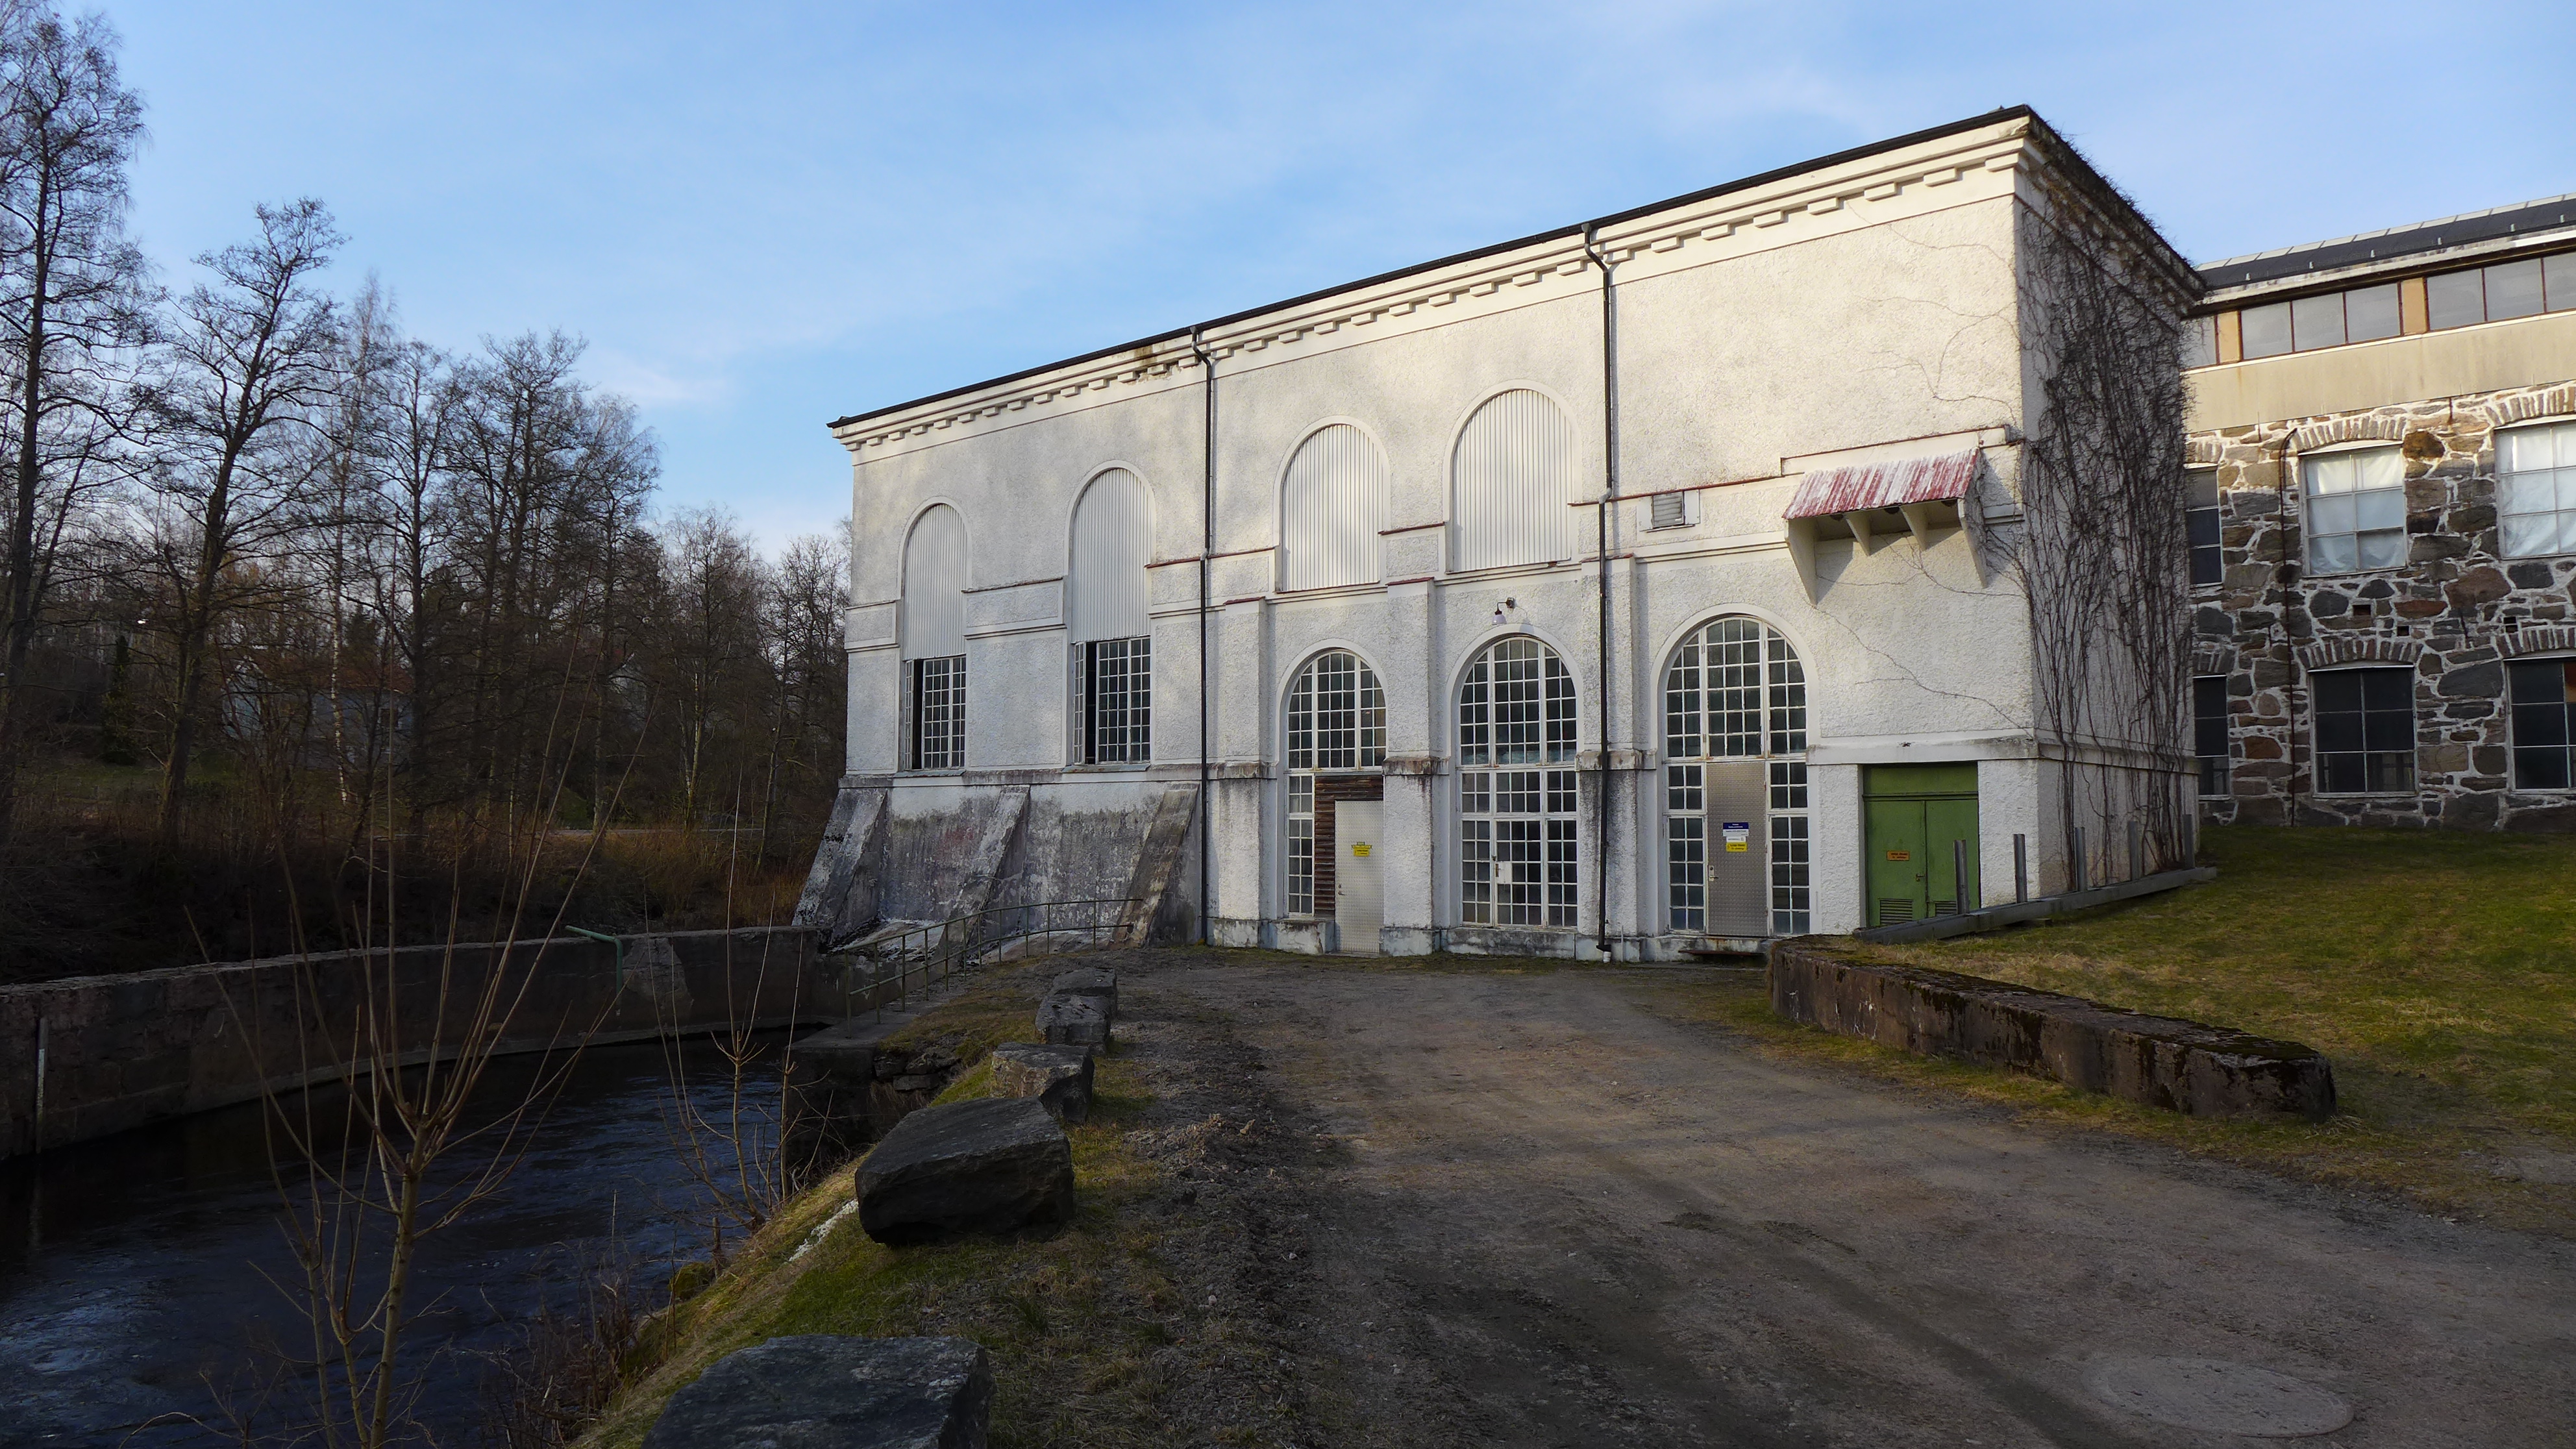 Rydals kraftverk ingår i byggnadsminnet Rydals fabriker. Byggnaden är uppförd i tjugotalsklassicistisk stil, med rundbågiga fönster och med den utkragade takfoten utsmyckad med en tandsnittsfris.
